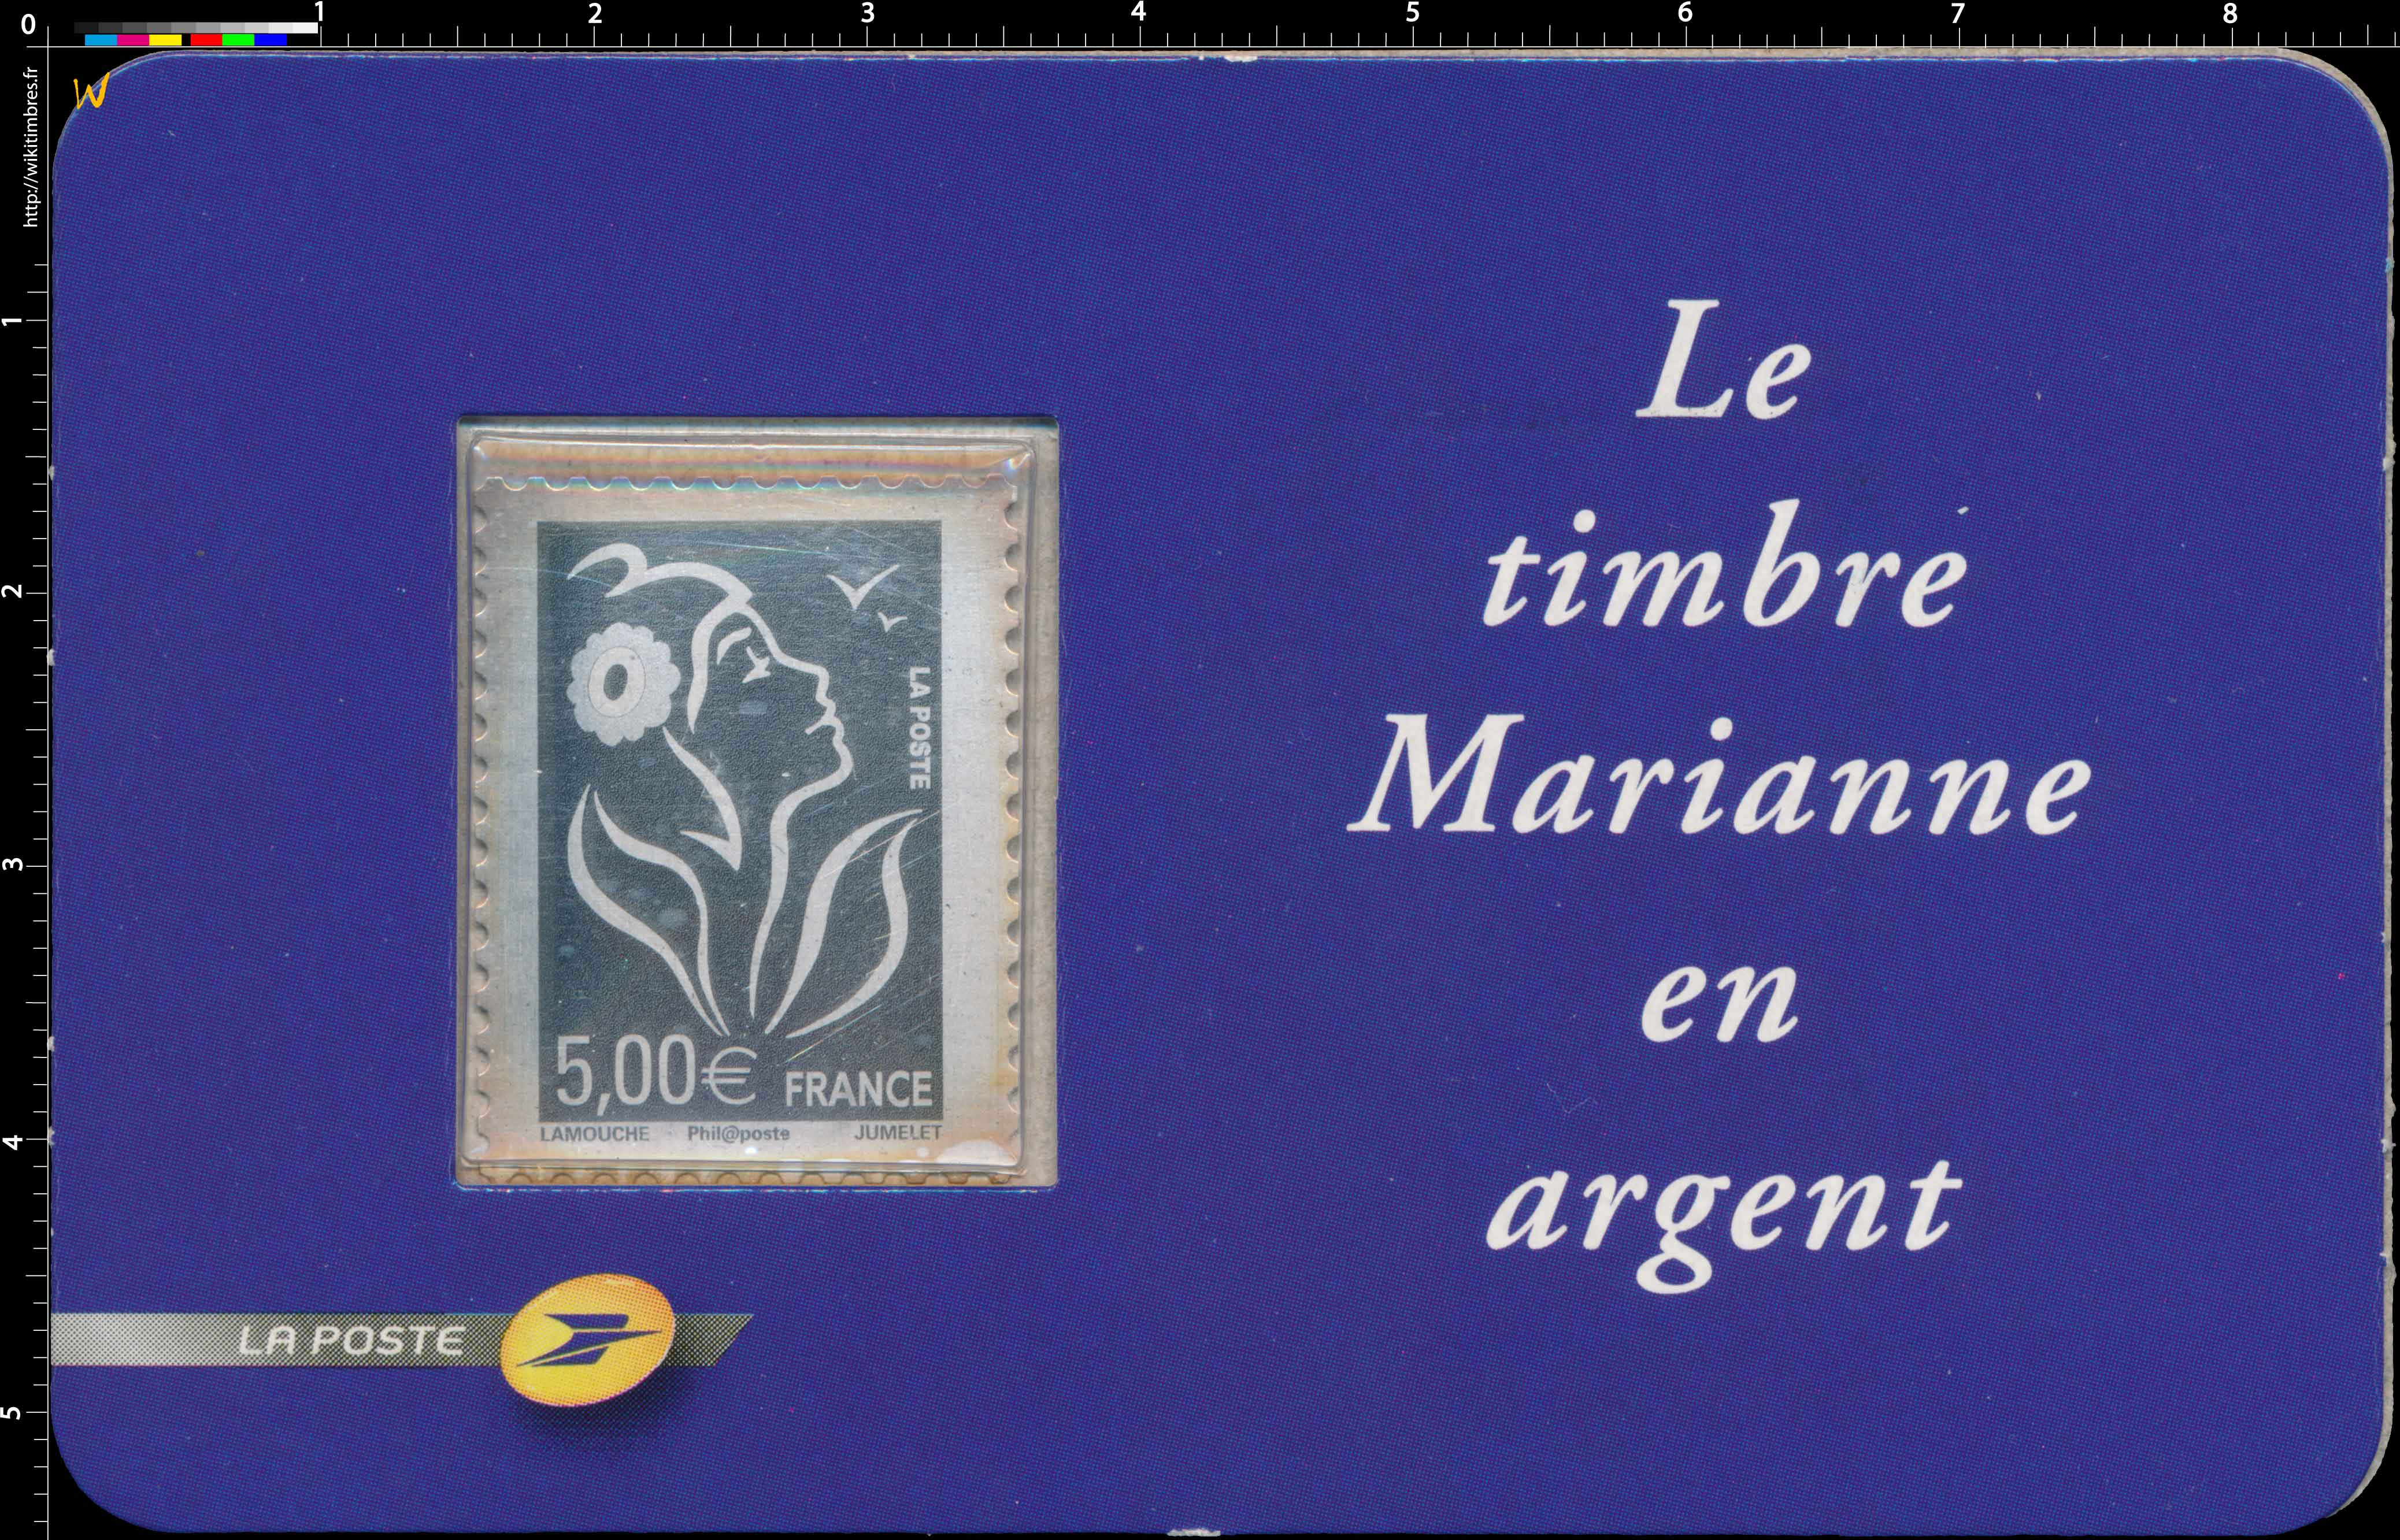 Le timbre Marianne en argent